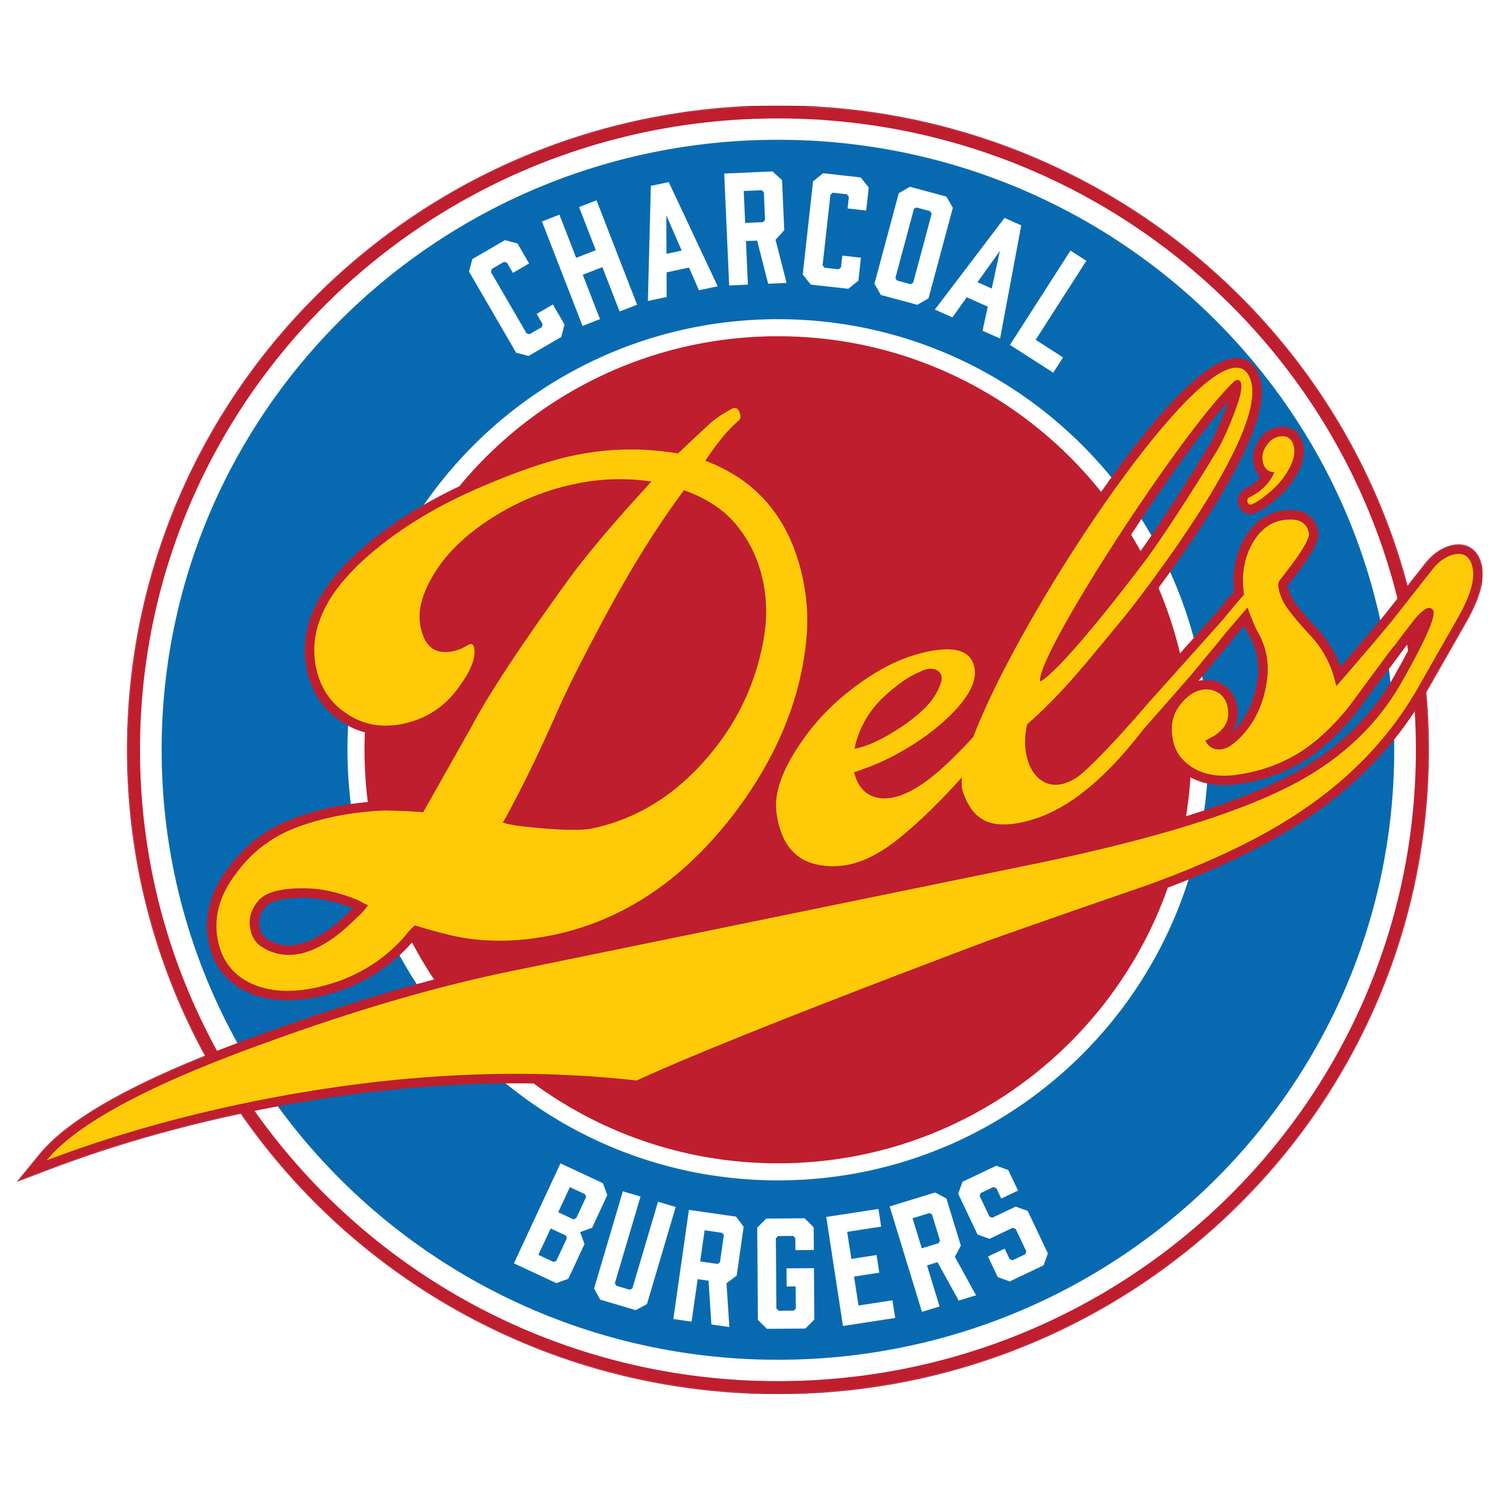 Del&#39;s Charcoal Burgers